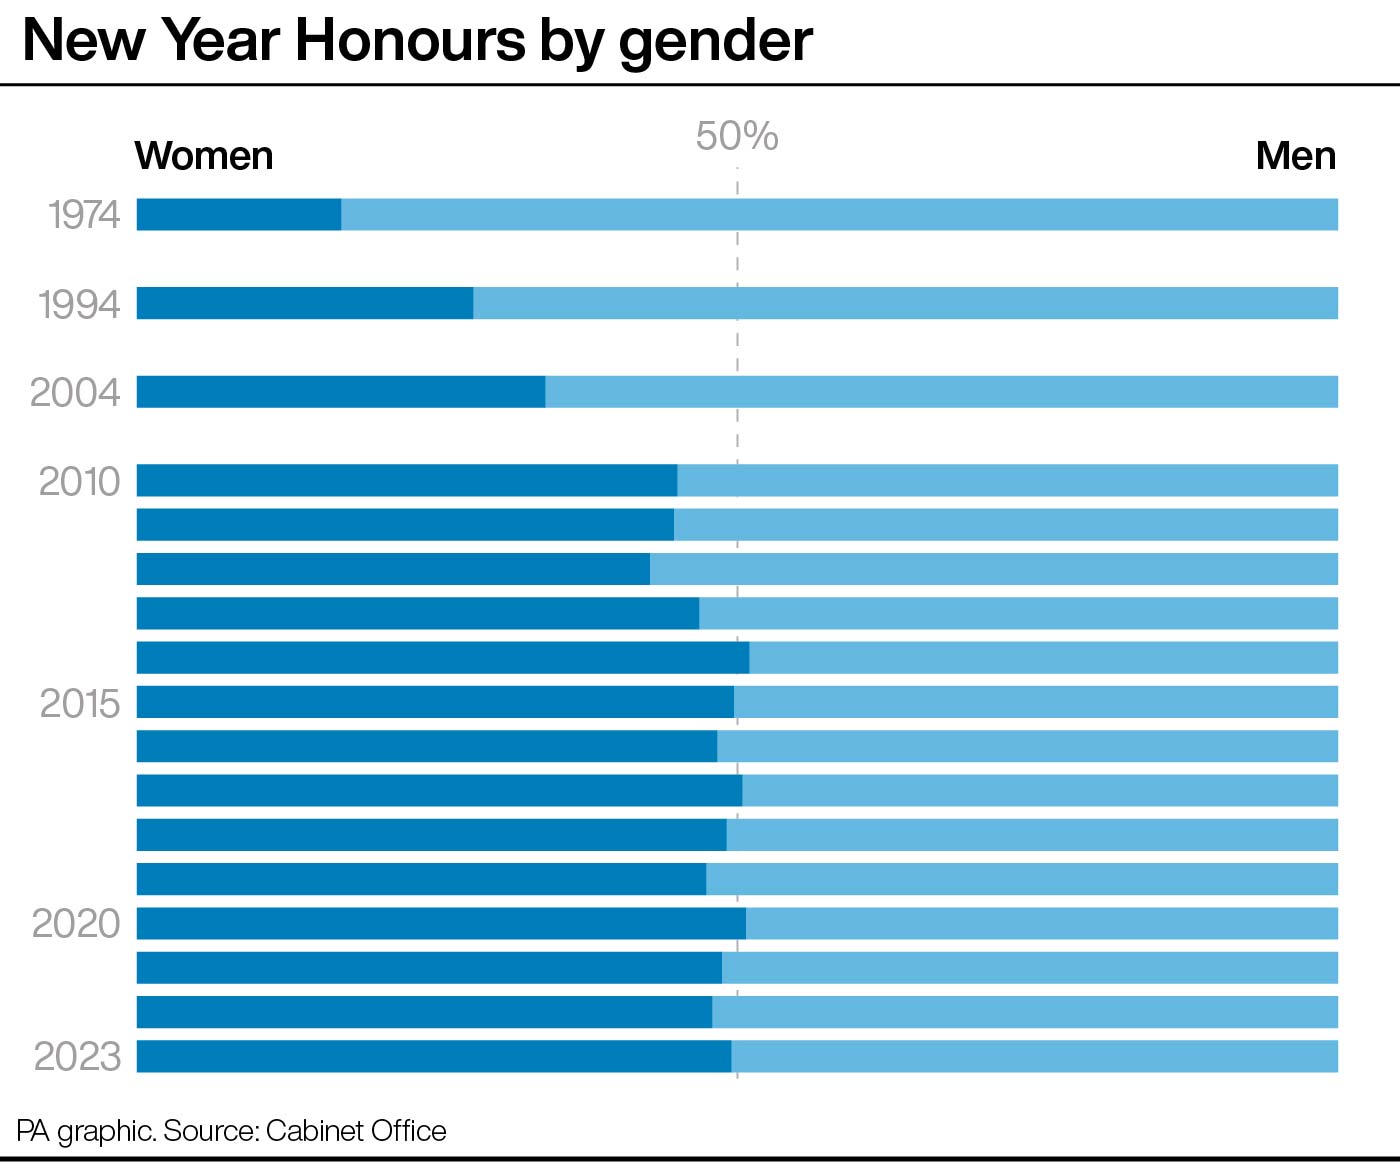 Honours by gender